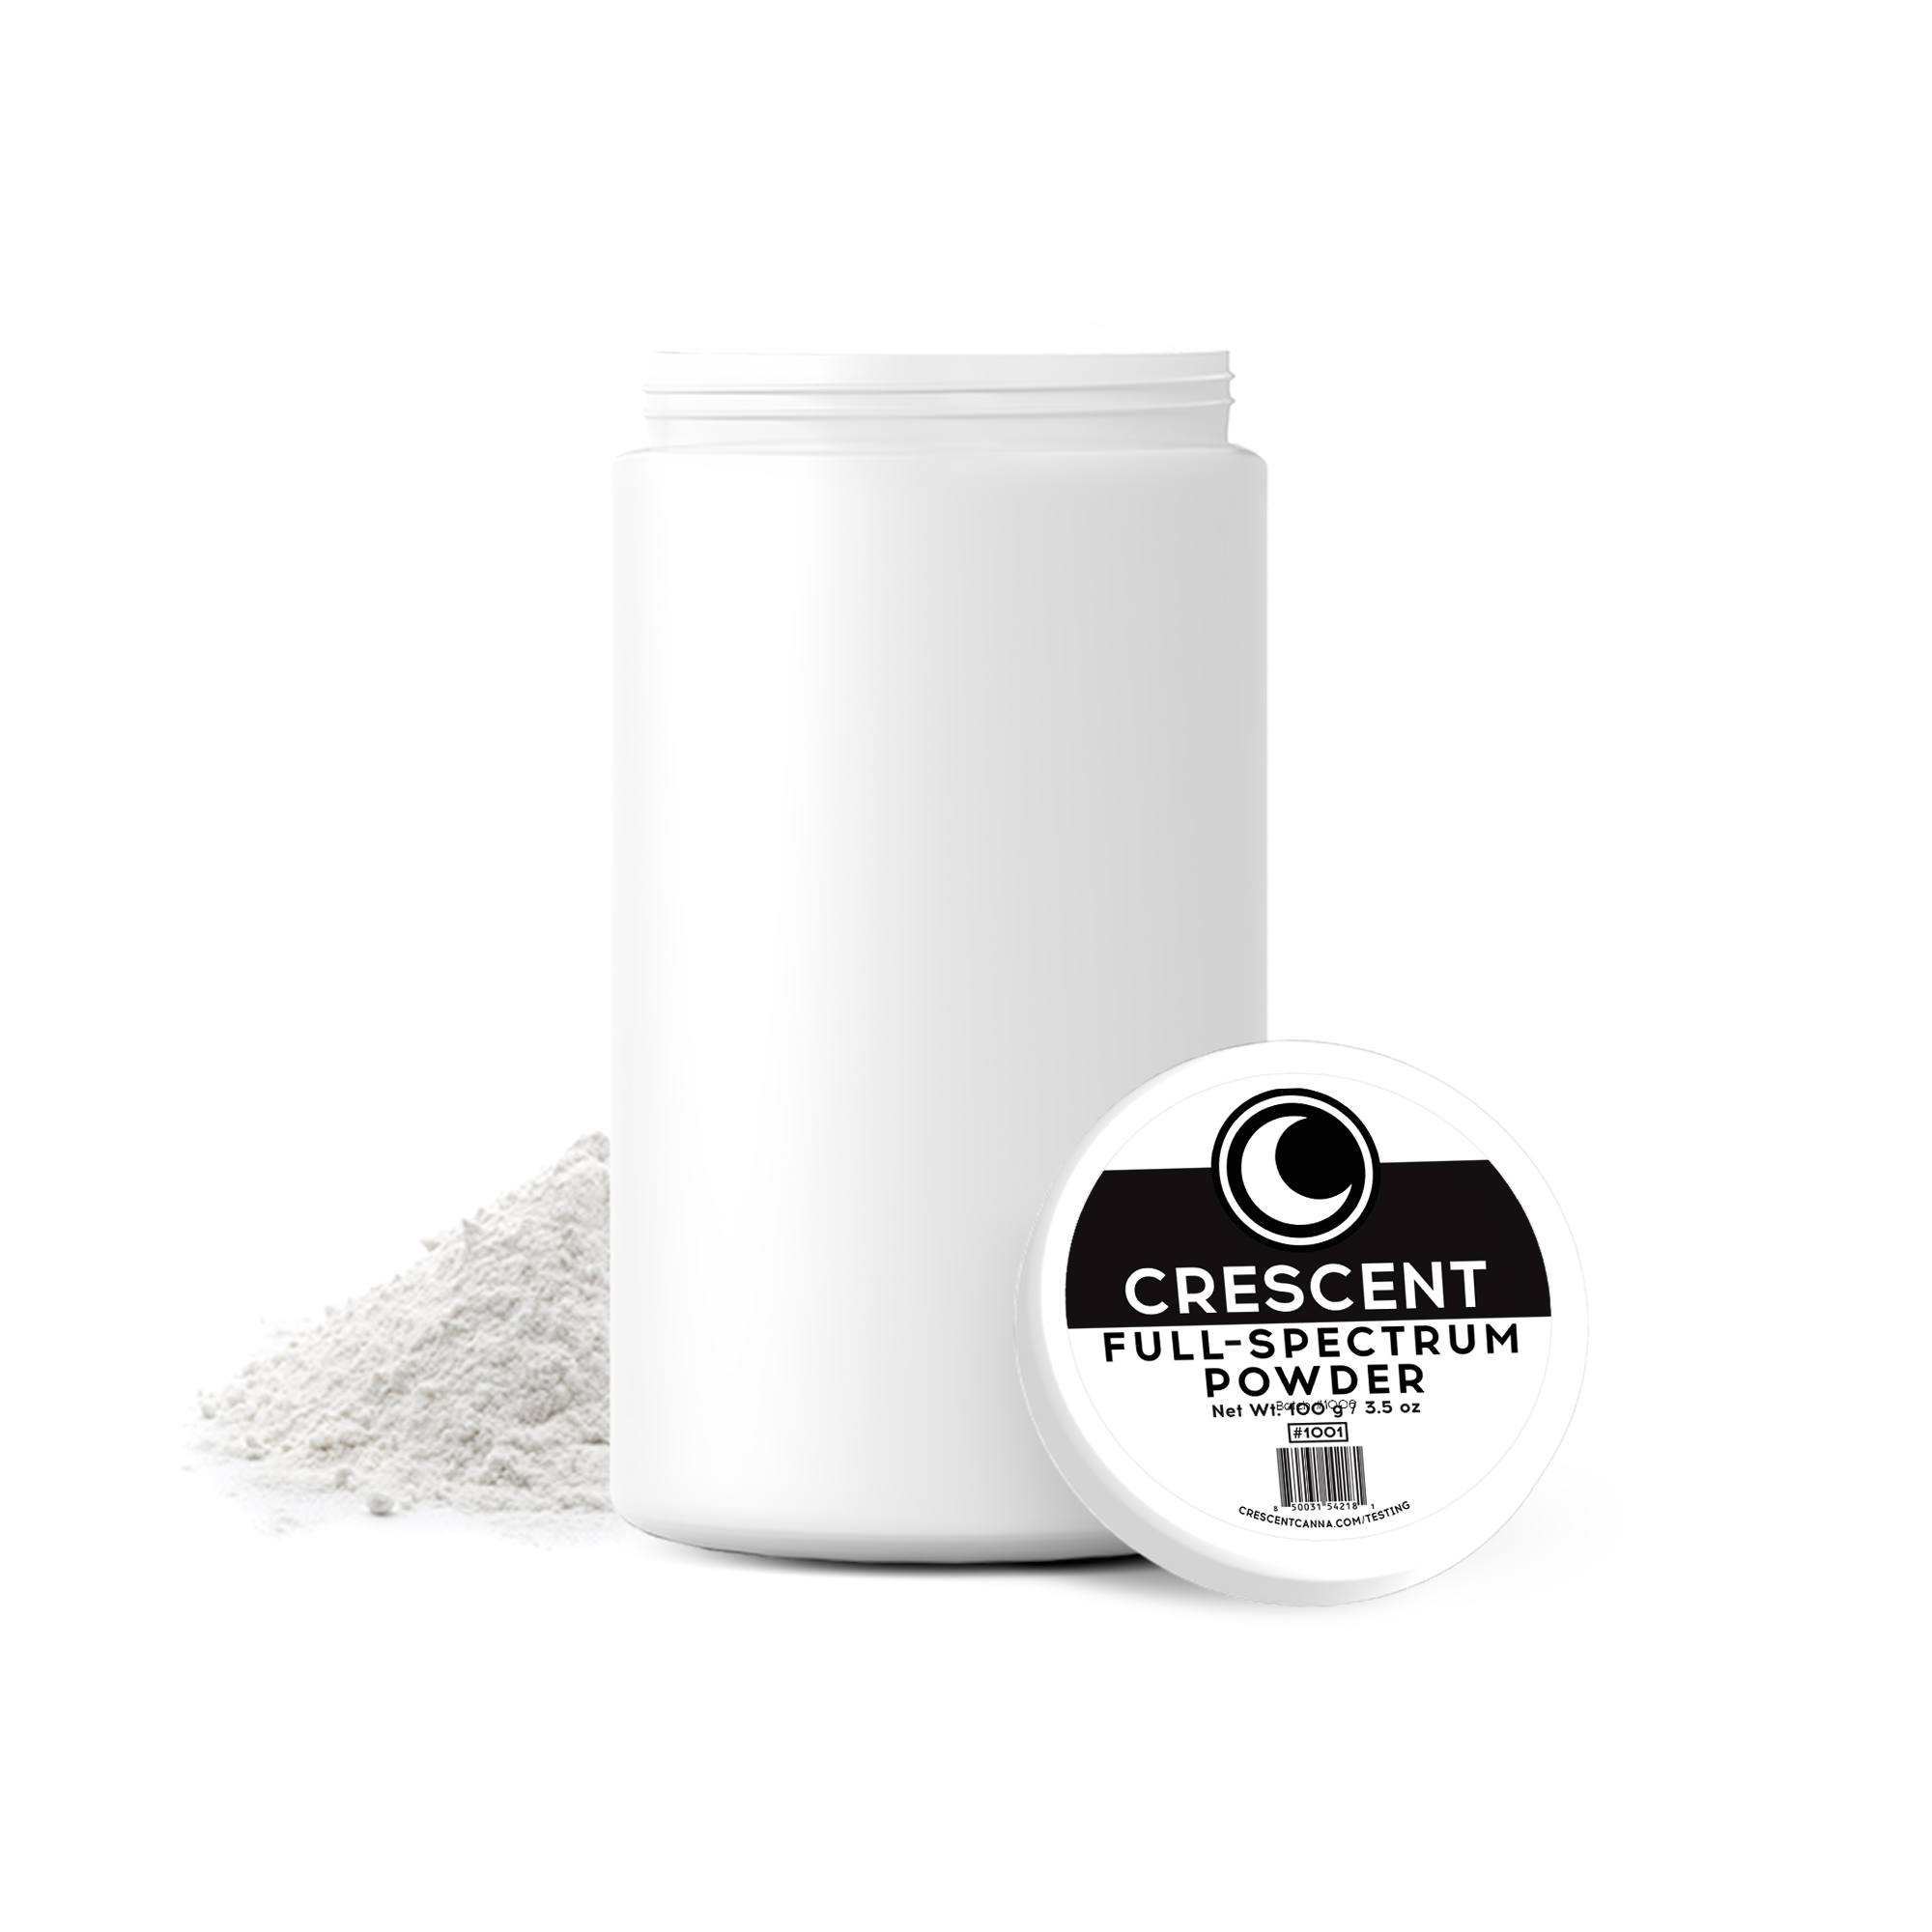 100 gram Full-Spectrum CBD Powder